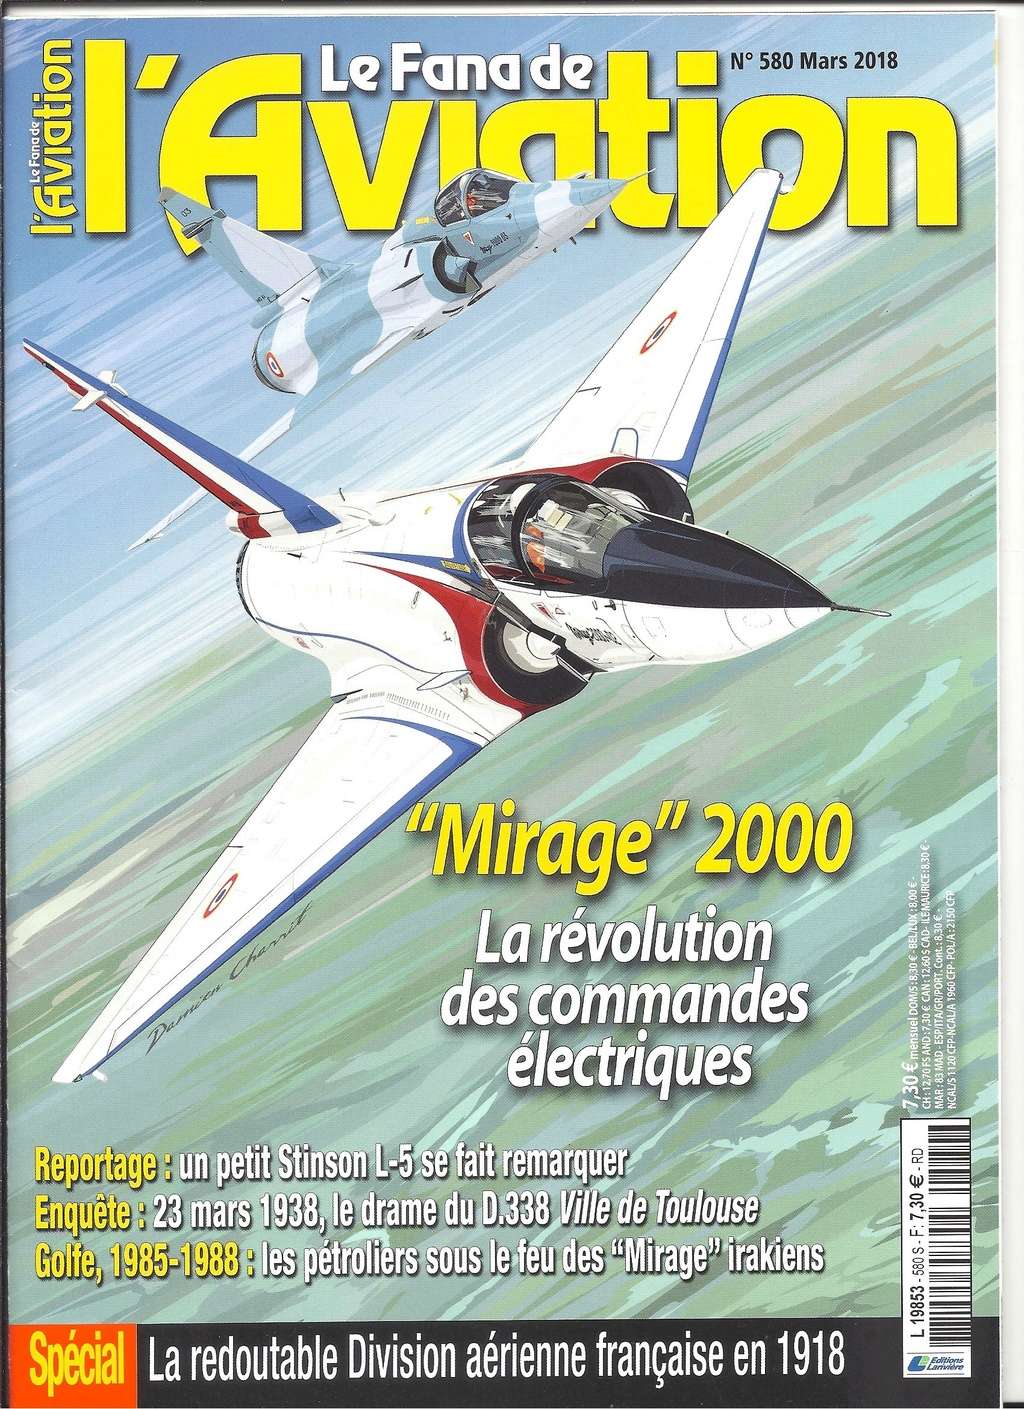 [ESCI - REVELL] DASSAULT MIRAGE 2000-01 Prototype  & Mirage 2000 C de série Réf 354 - Page 2 Revue105